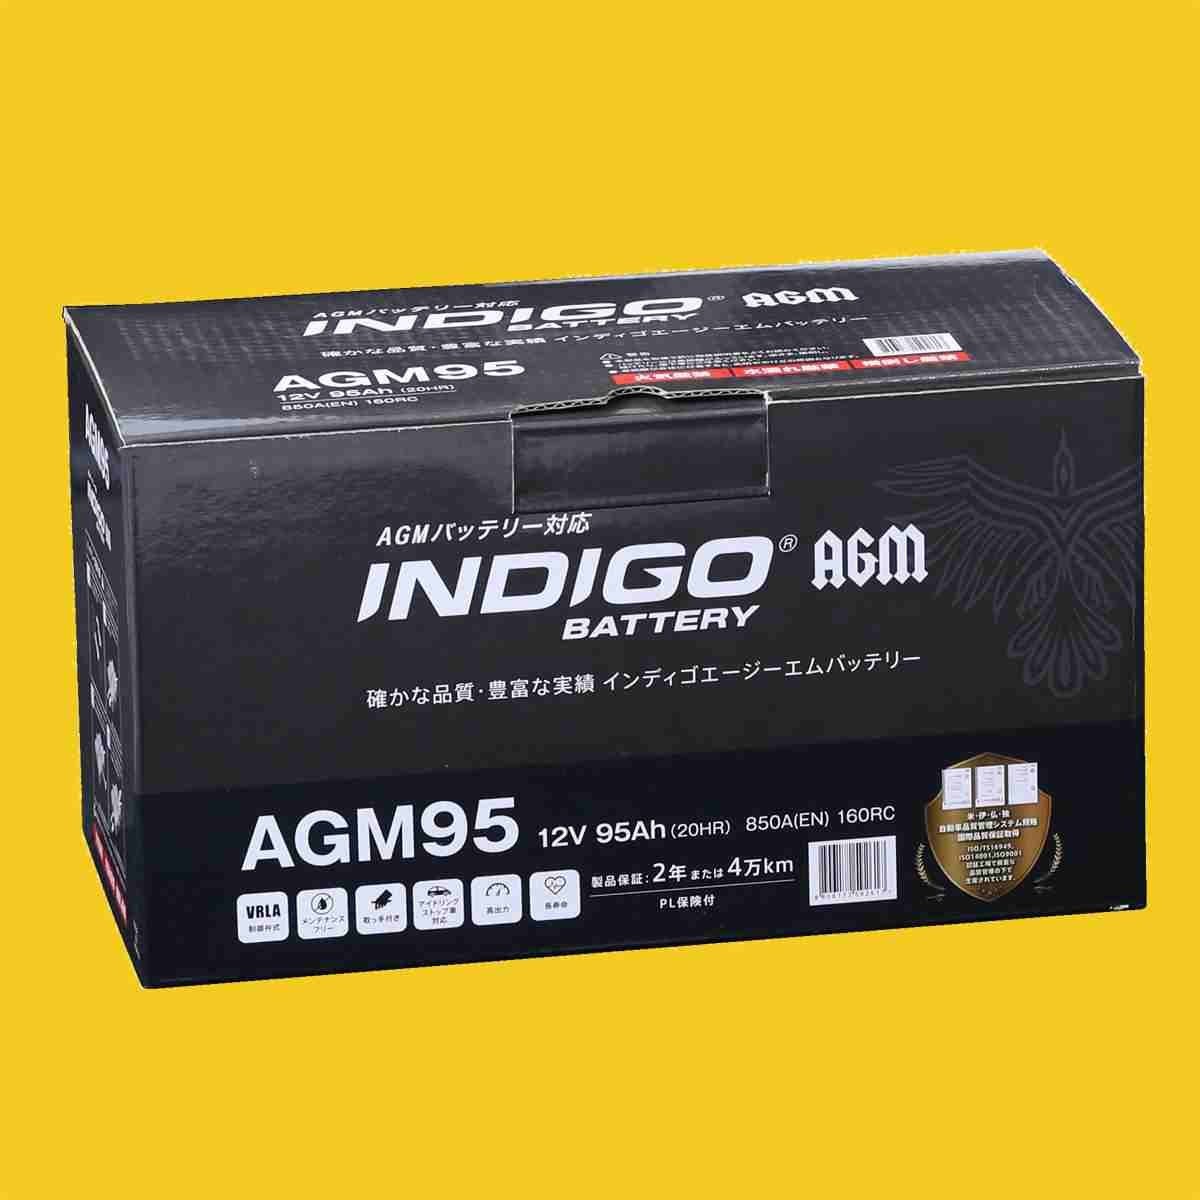 【インディゴバッテリー】AGM95 メルセデスベンツ Gクラス E-460238 互換:ENJ-410LN5-IS,LN5(AGM) 輸入車用 新品 保証付 即納 AGM EFB対応_画像3